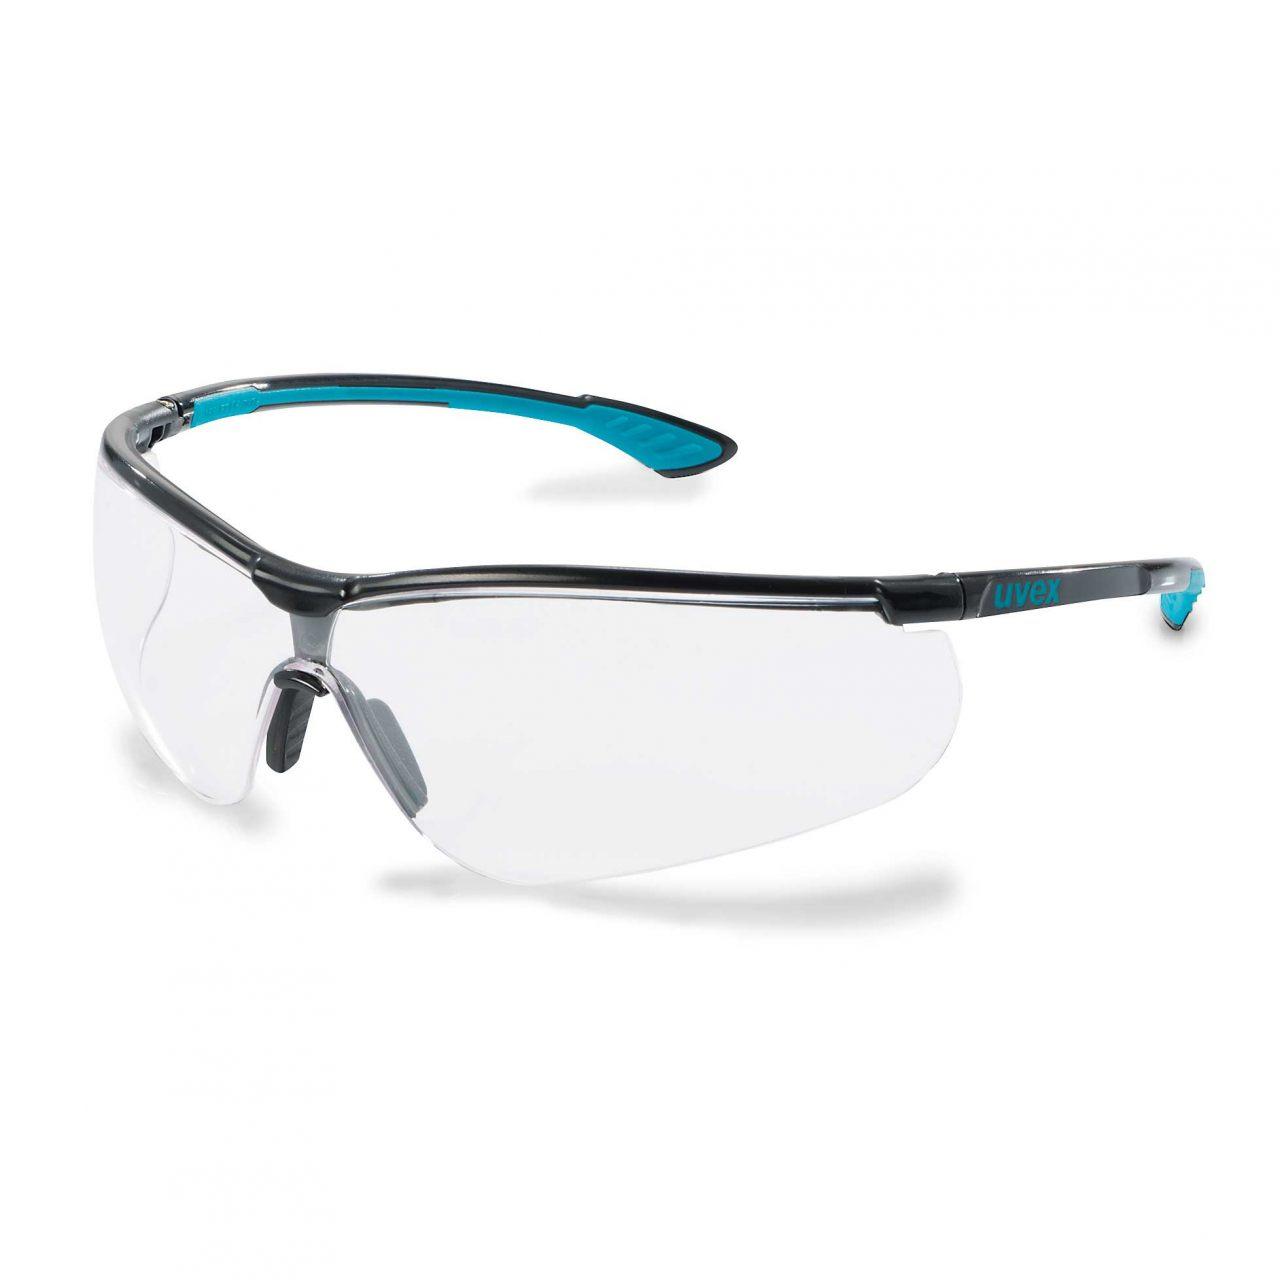 Защитные очки uvex спортстайл, фото 1